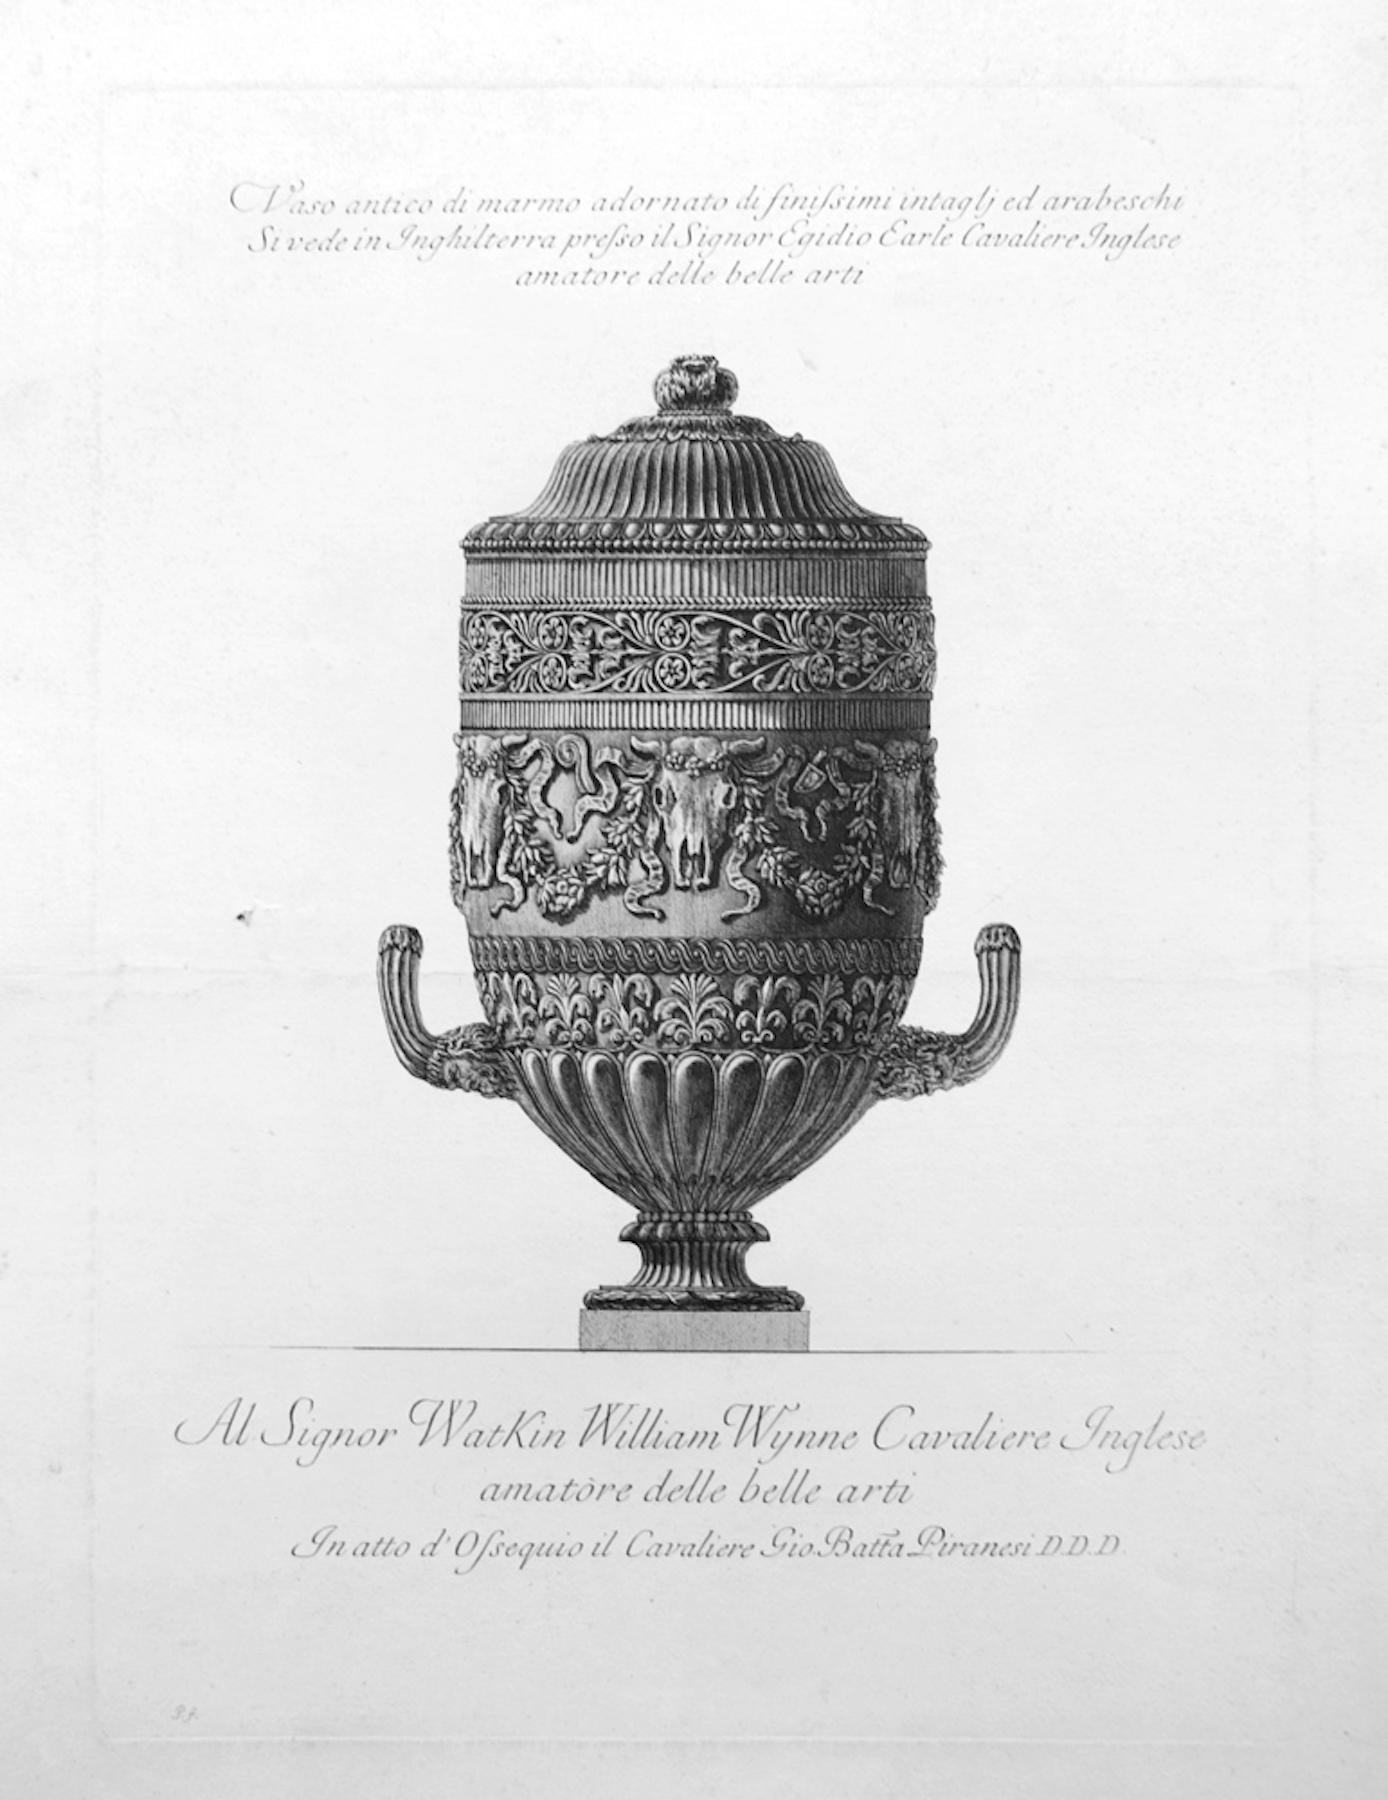 Giovanni Battista Piranesi Figurative Print -  Vaso antico di marmo adornato di finissimi intagli ed arabeschi - Etching 1778